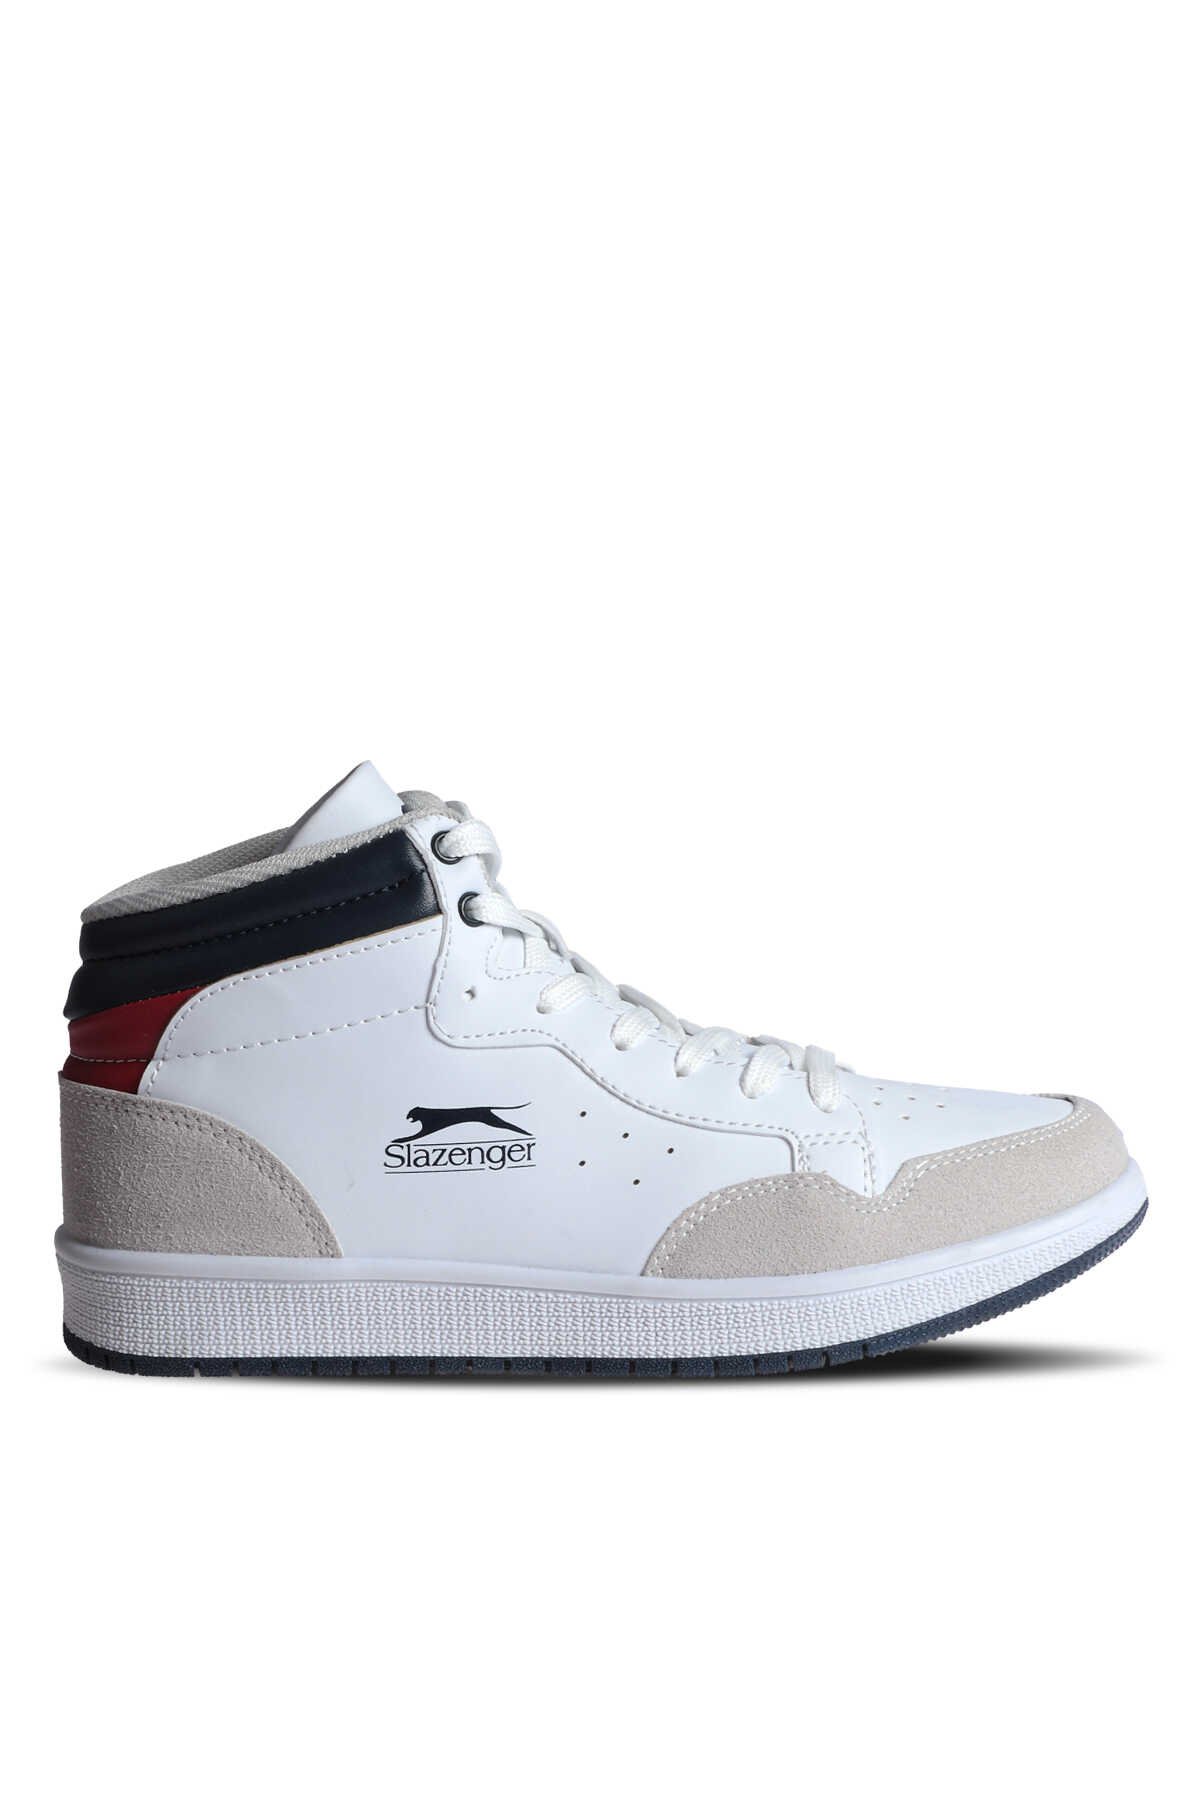 Slazenger - PACE Sneaker Kadın Ayakkabı Beyaz